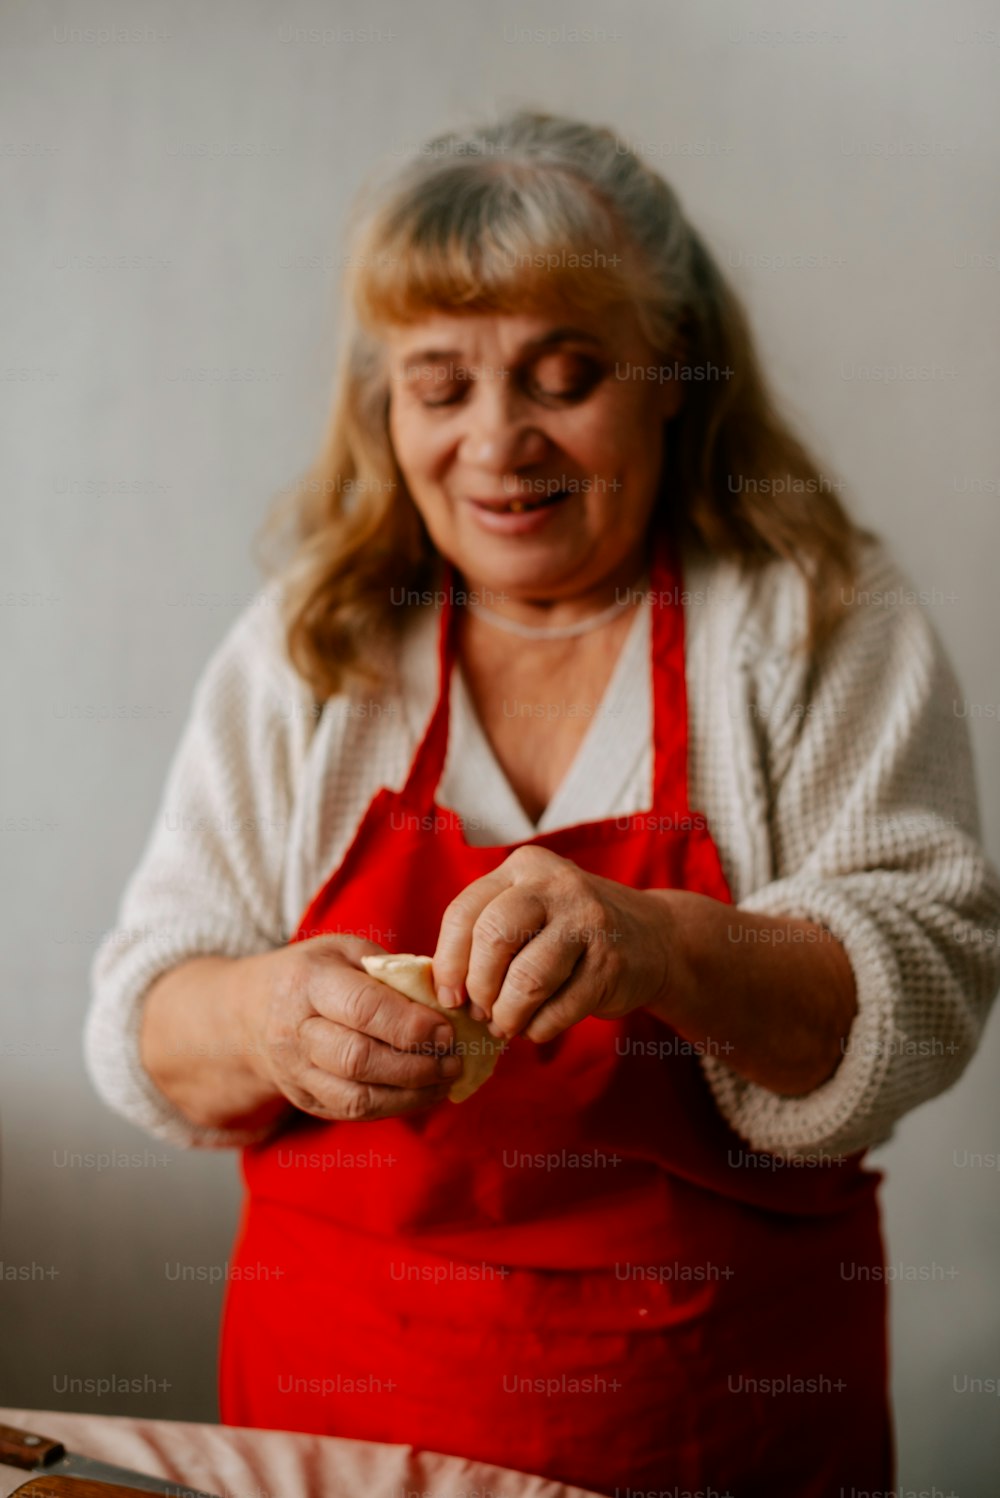 uma mulher em um avental preparando comida em uma mesa